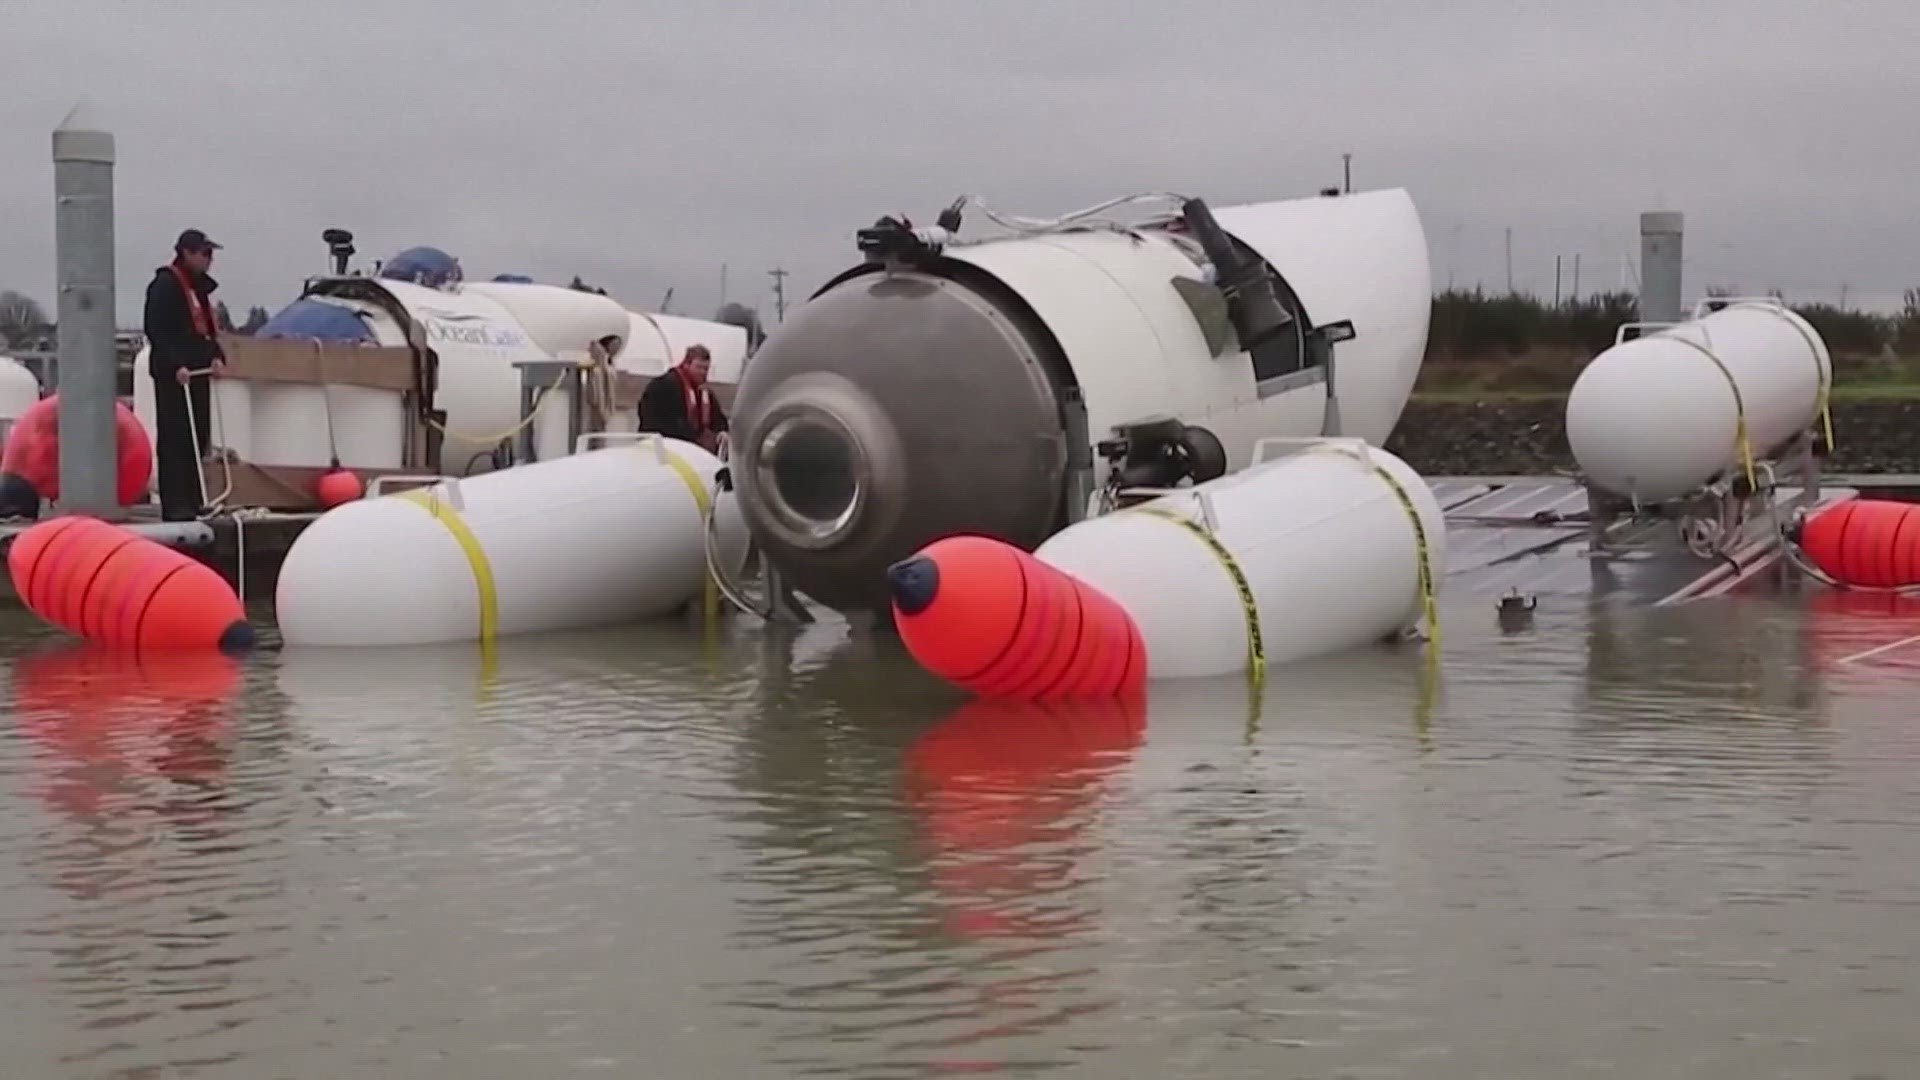 has tourist submarine been found